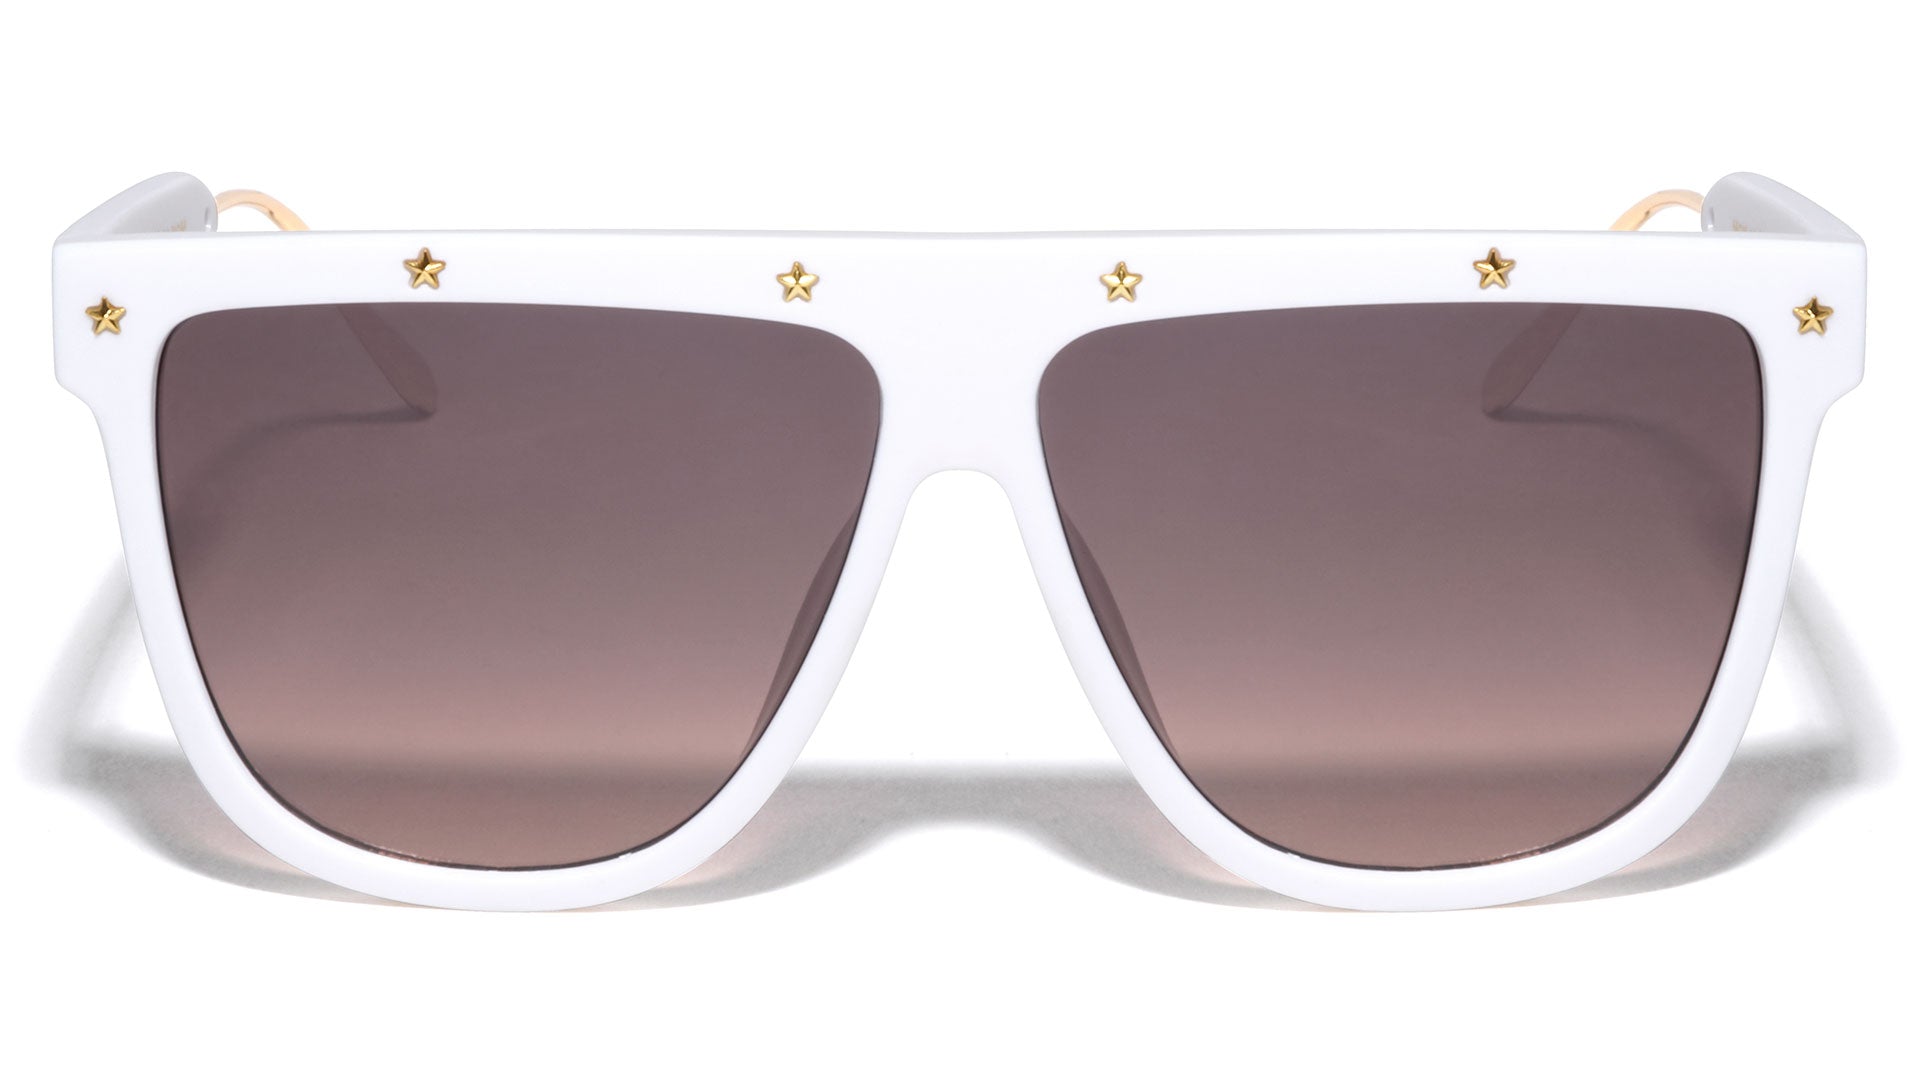 lv flat top sunglasses